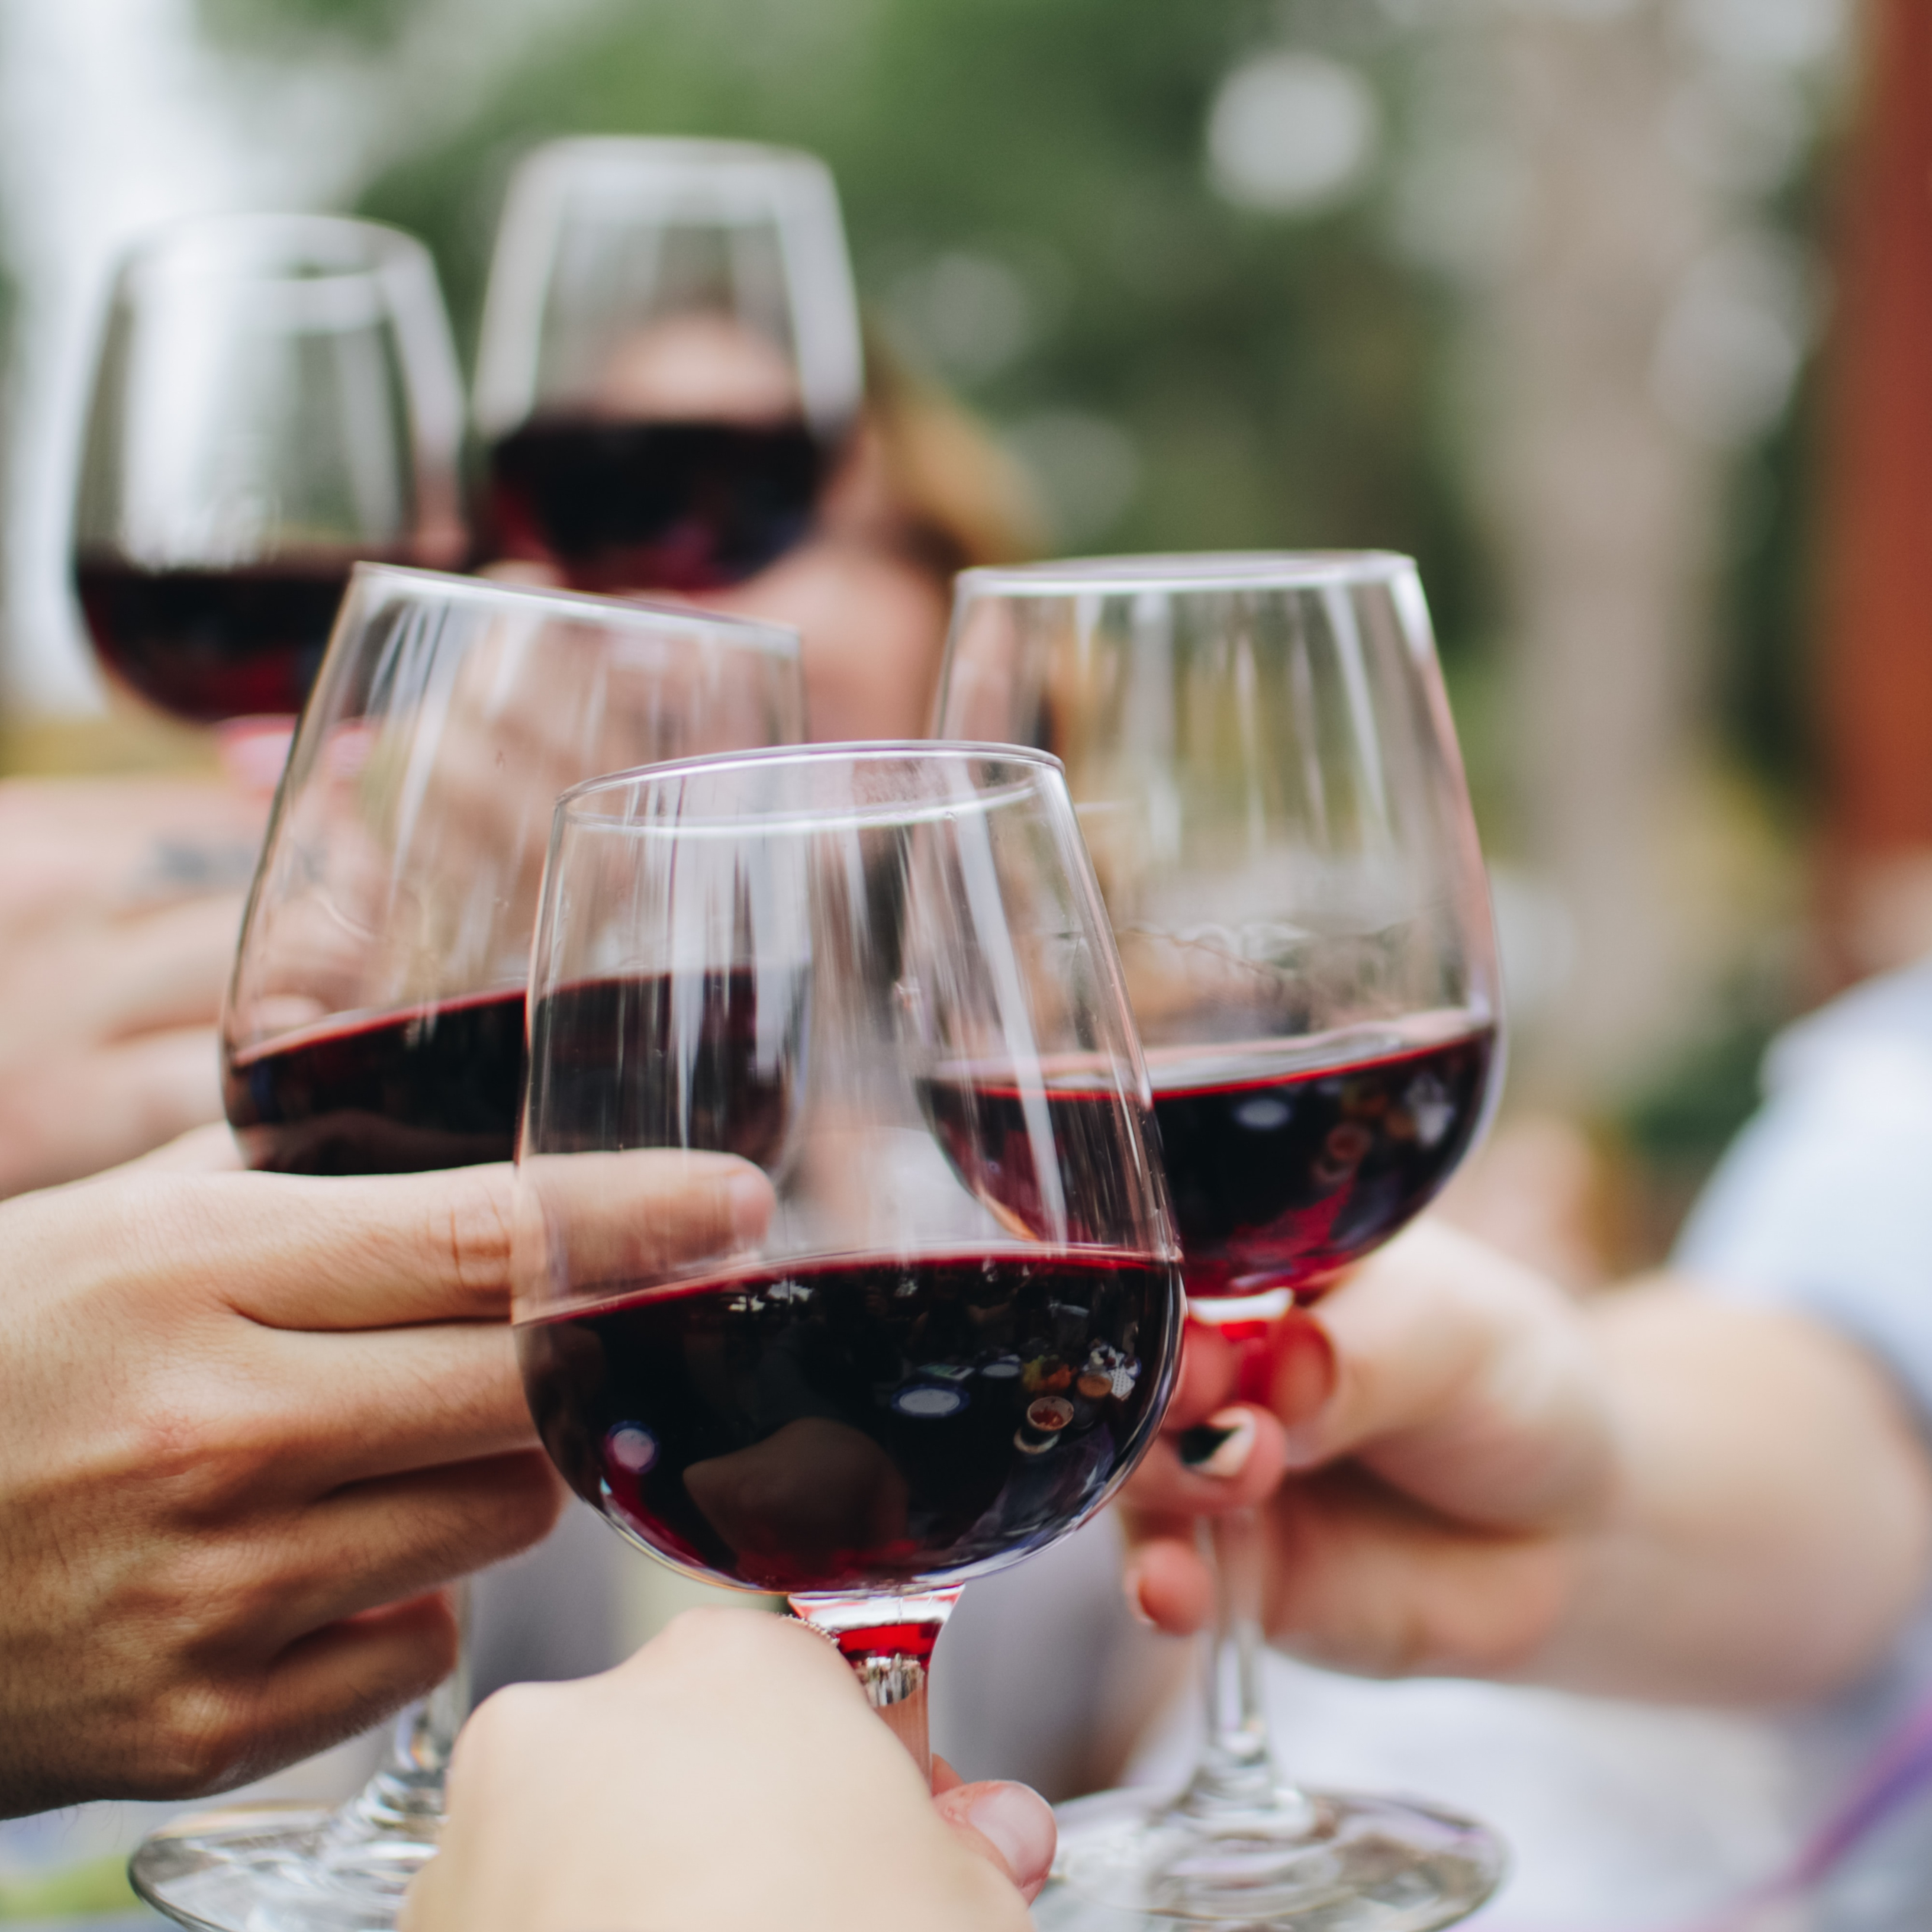 El nuevo beneficio para la salud descubierto en el vino tinto